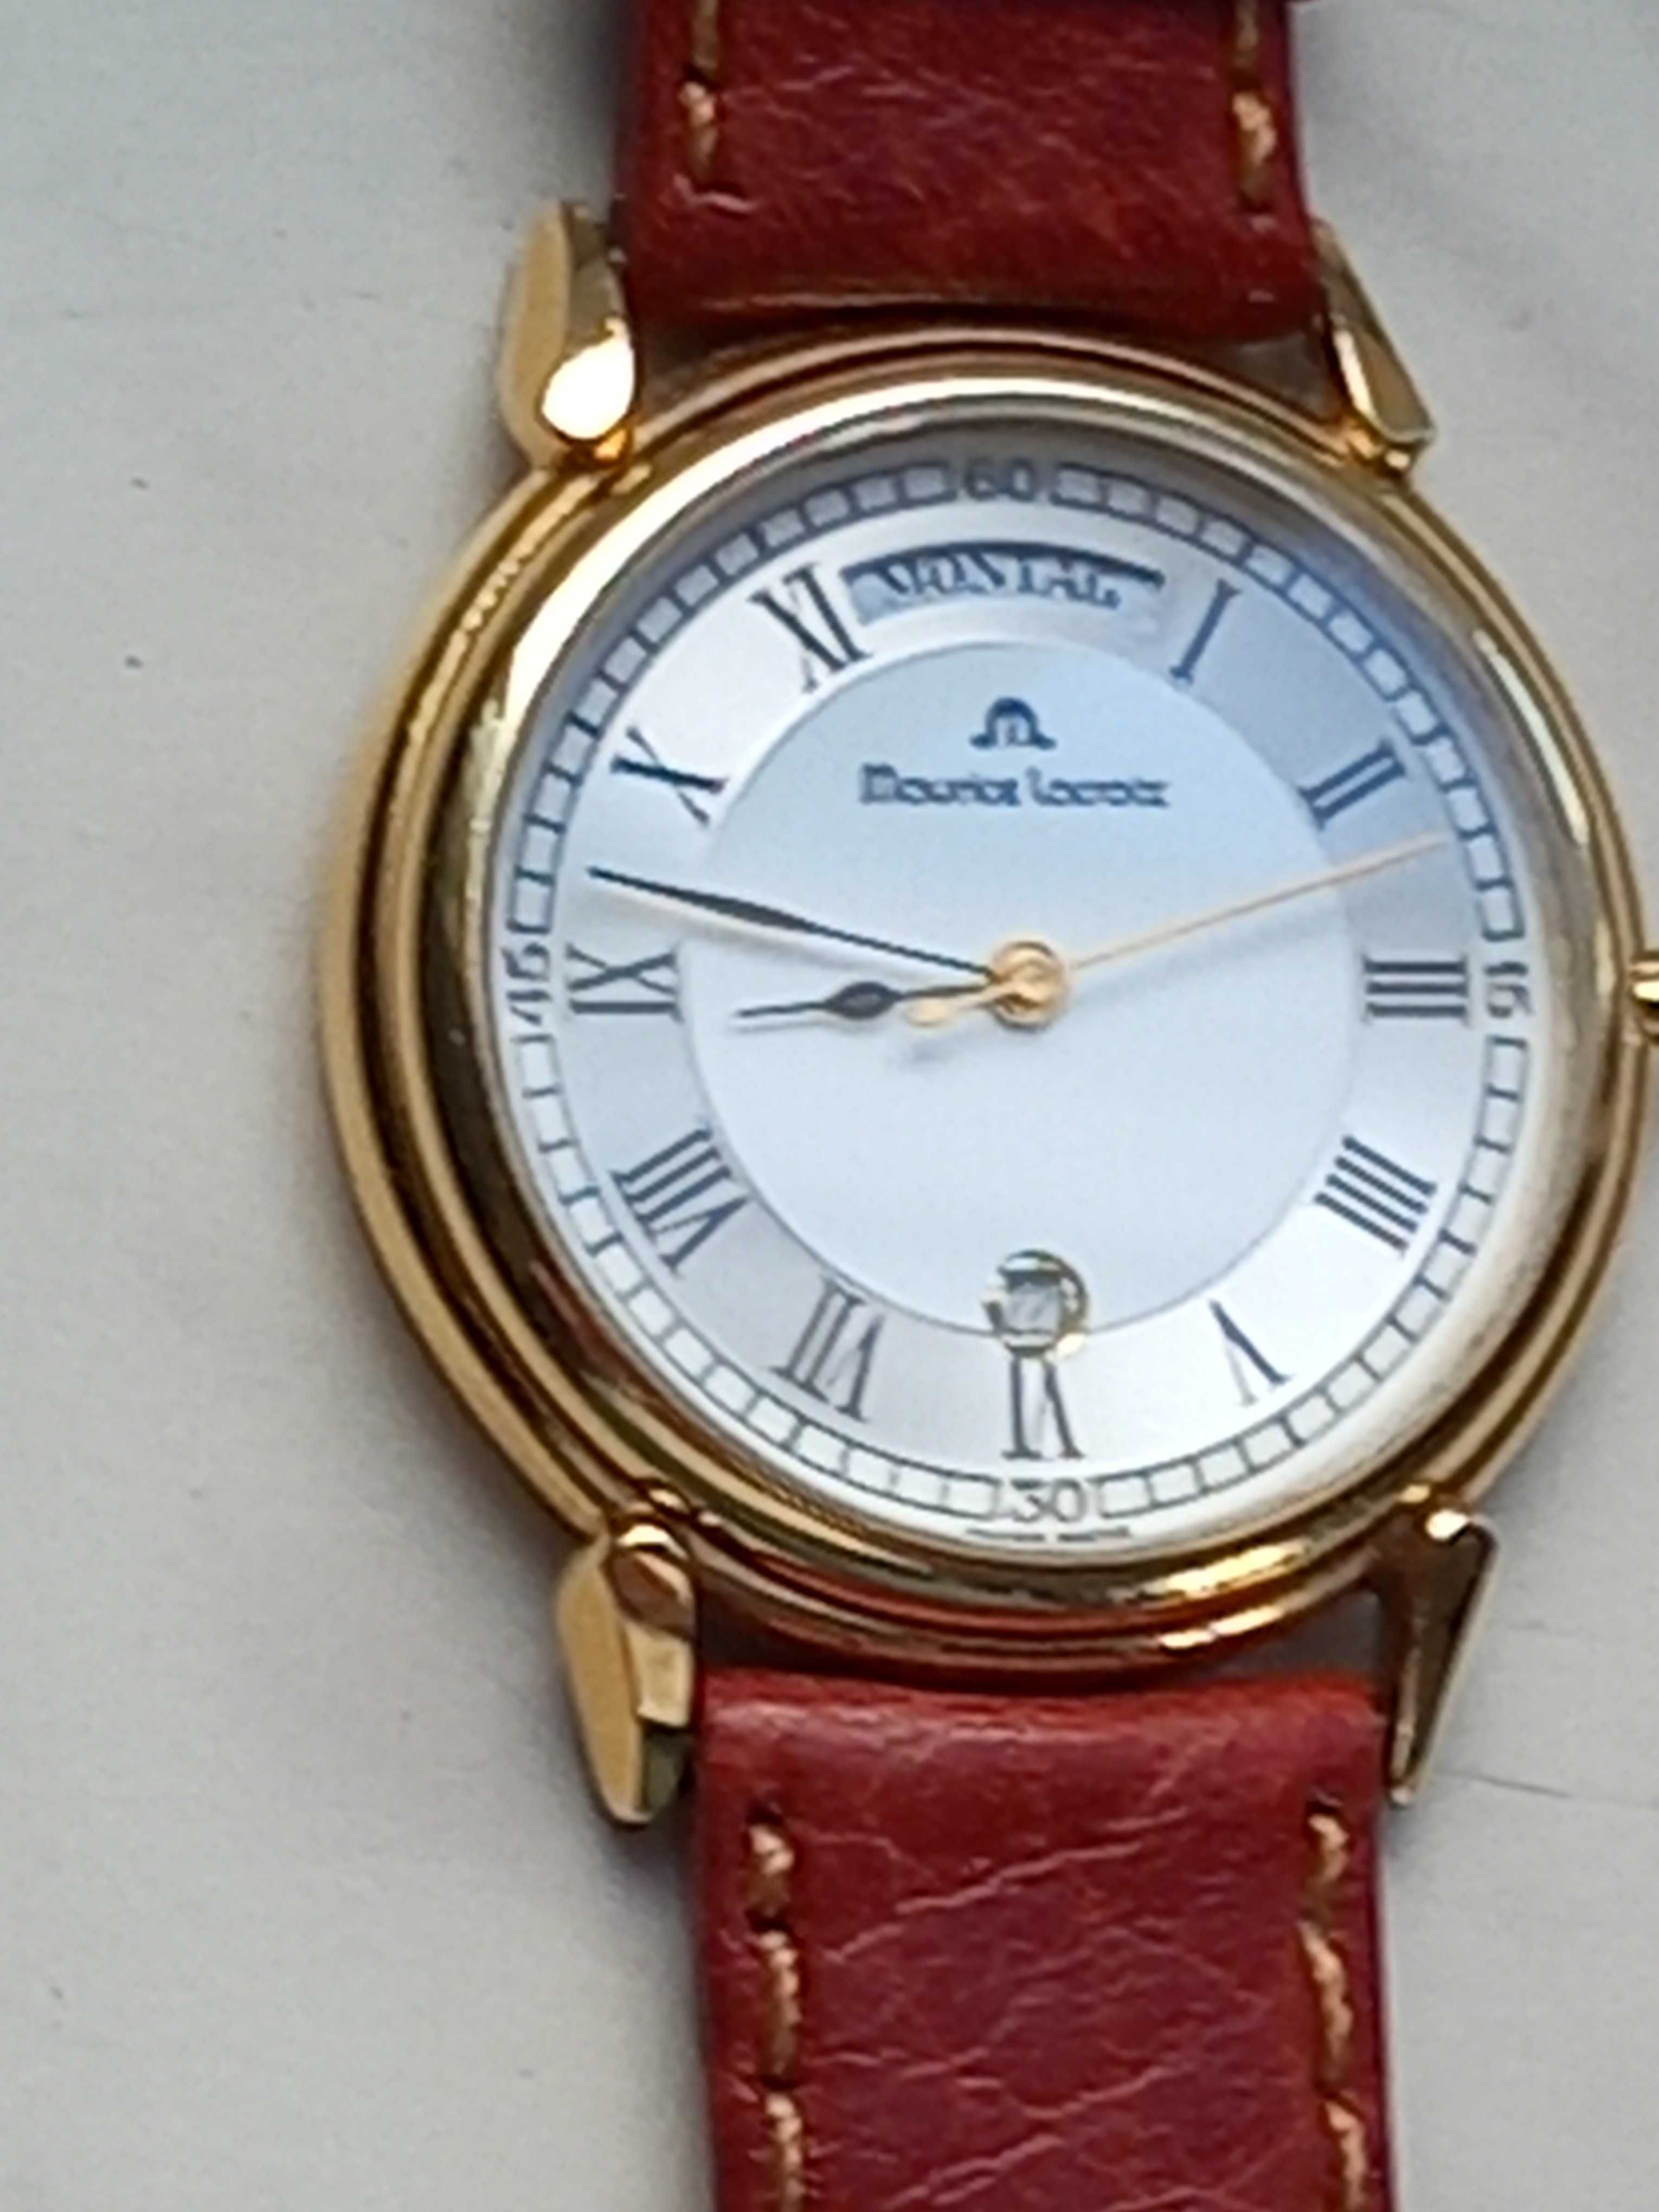 zegarek Maurice locroix z lat 90 tych orginał swiss made